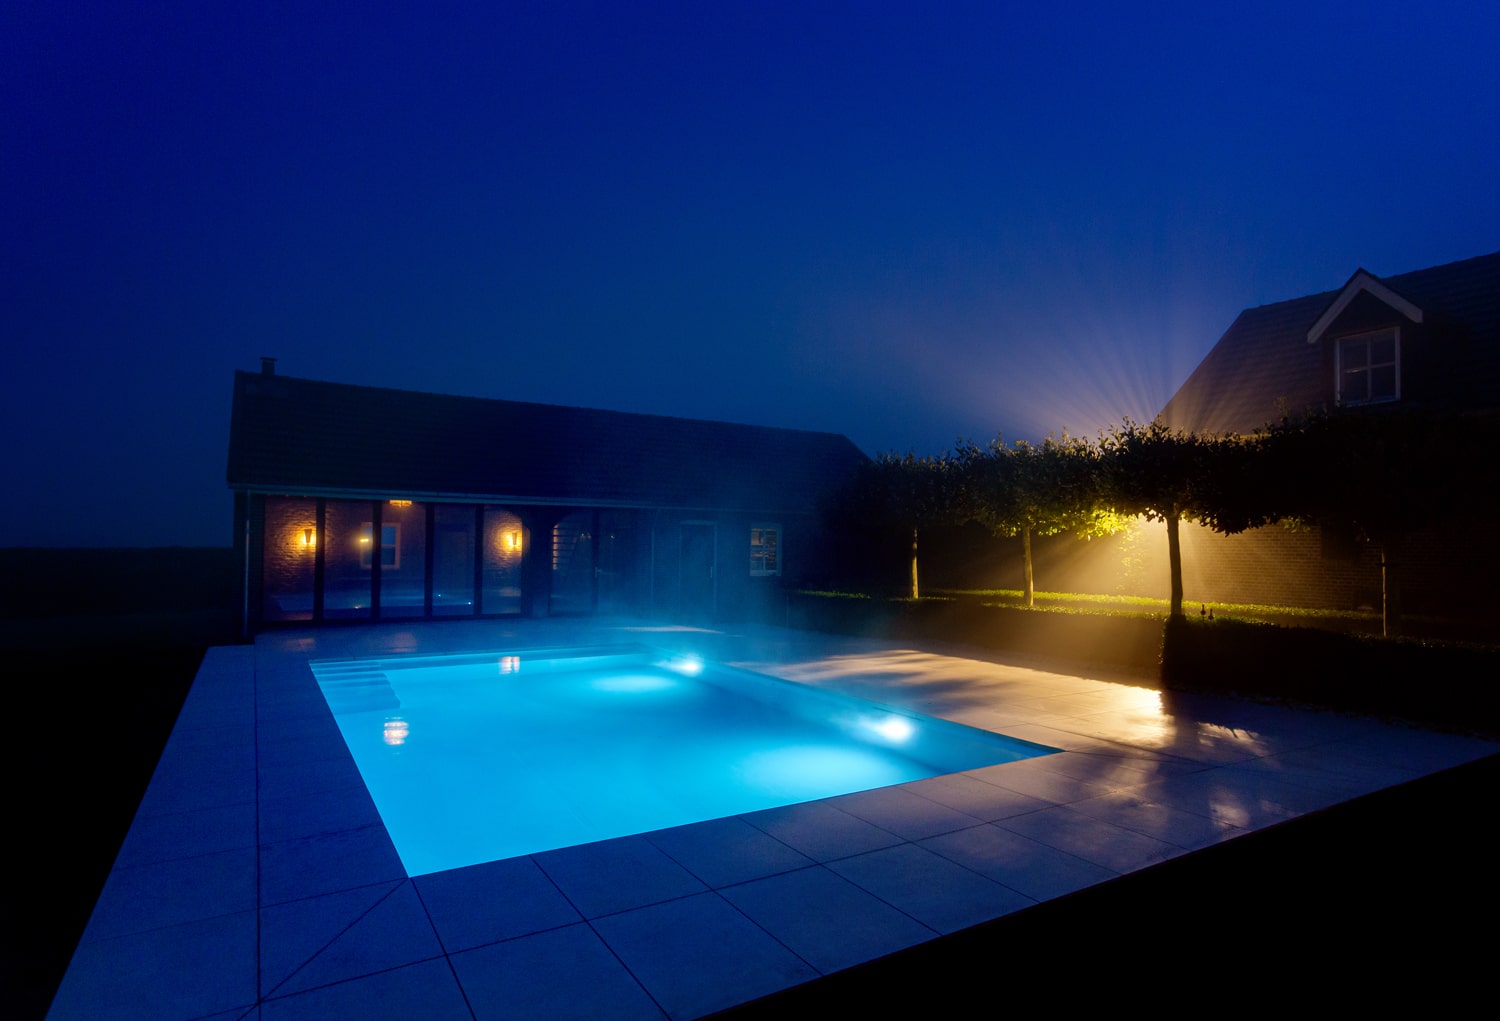 Hoogwaterniveau skimmer zwembad - by night - Diepwater